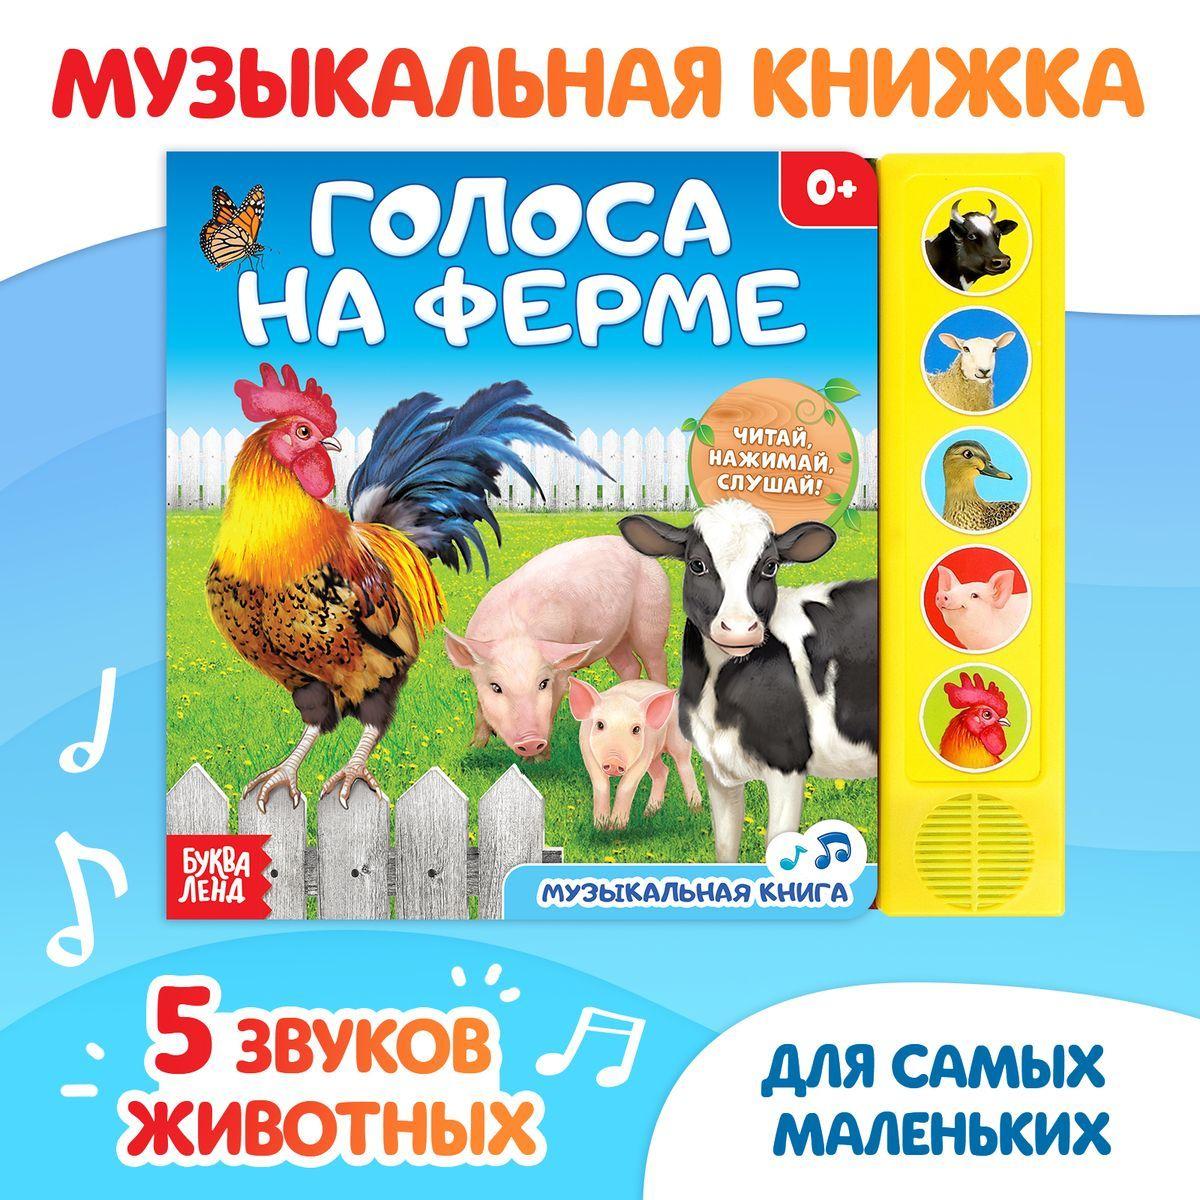 Музыкальная книжка "Голоса на ферме", развивающая книга для детей, БУКВА-ЛЕНД | Сачкова Евгения Камилевна